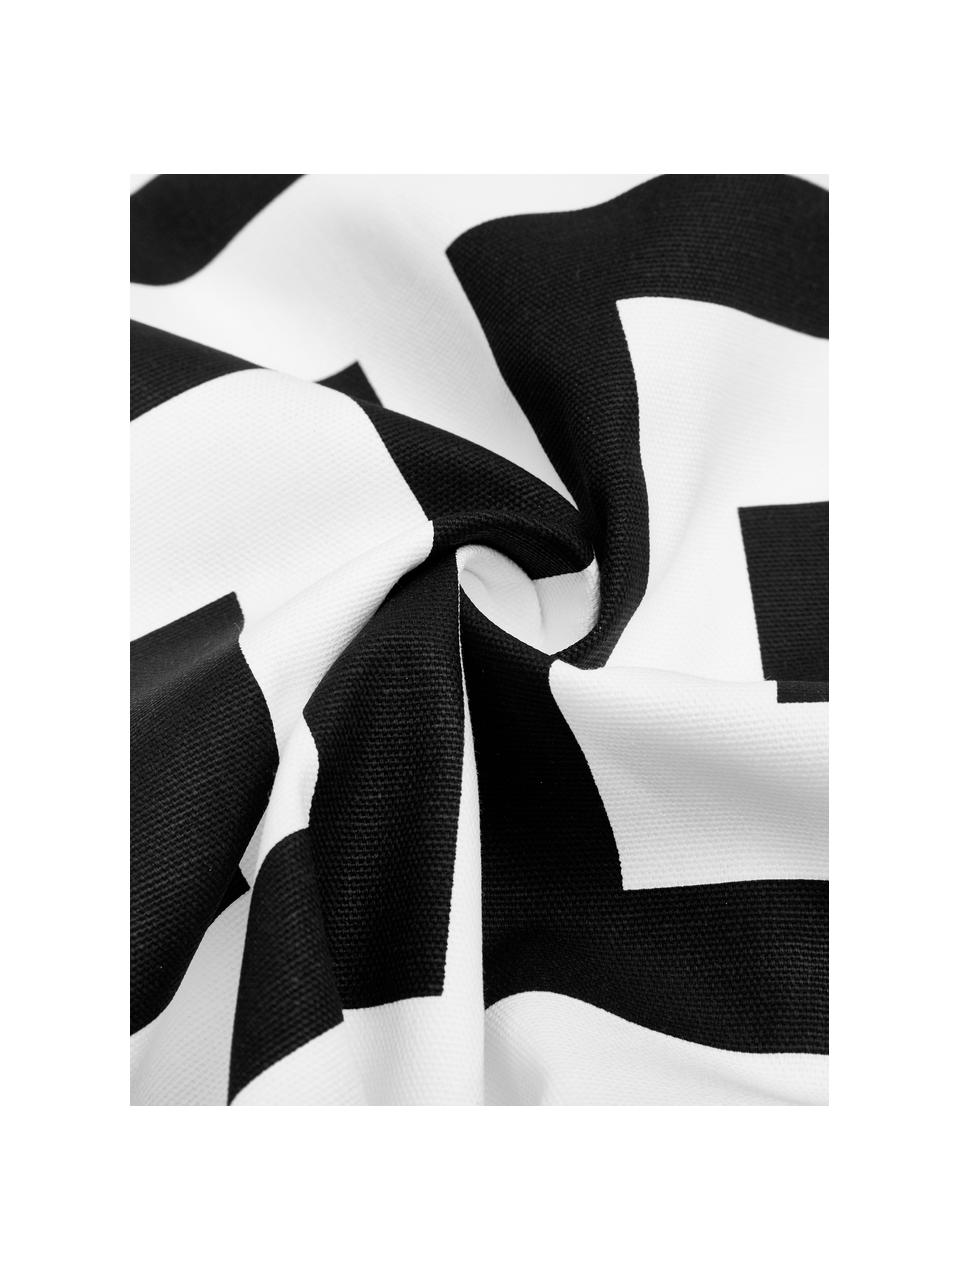 Bavlněný povlak na polštář s grafickým vzorem Bram, 100 % bavlna, Černá, bílá, Š 45 cm, D 45 cm